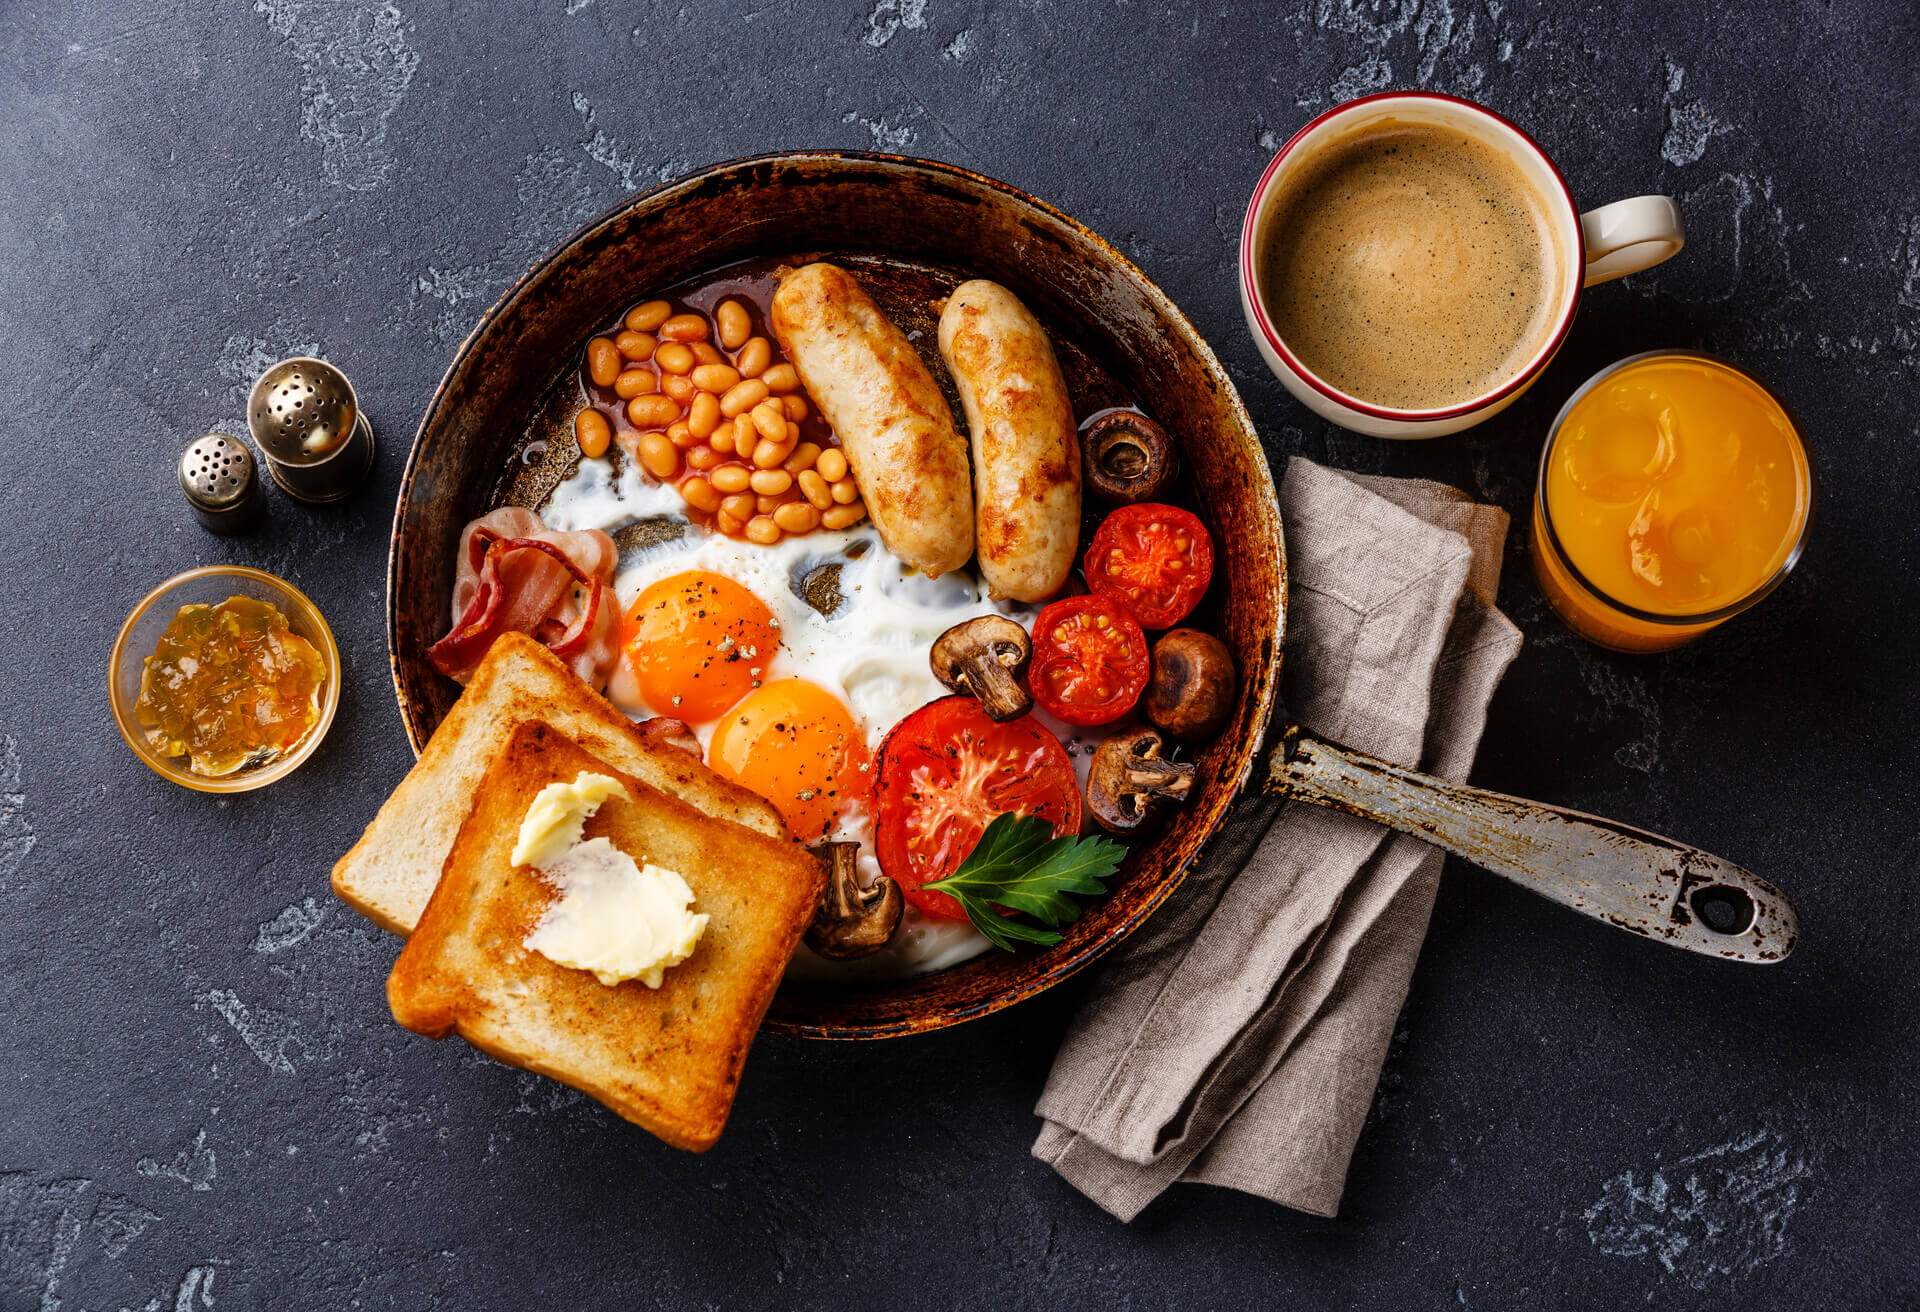 10 platos ingleses para descubrir la gastronomía británica | Skyscanner ...